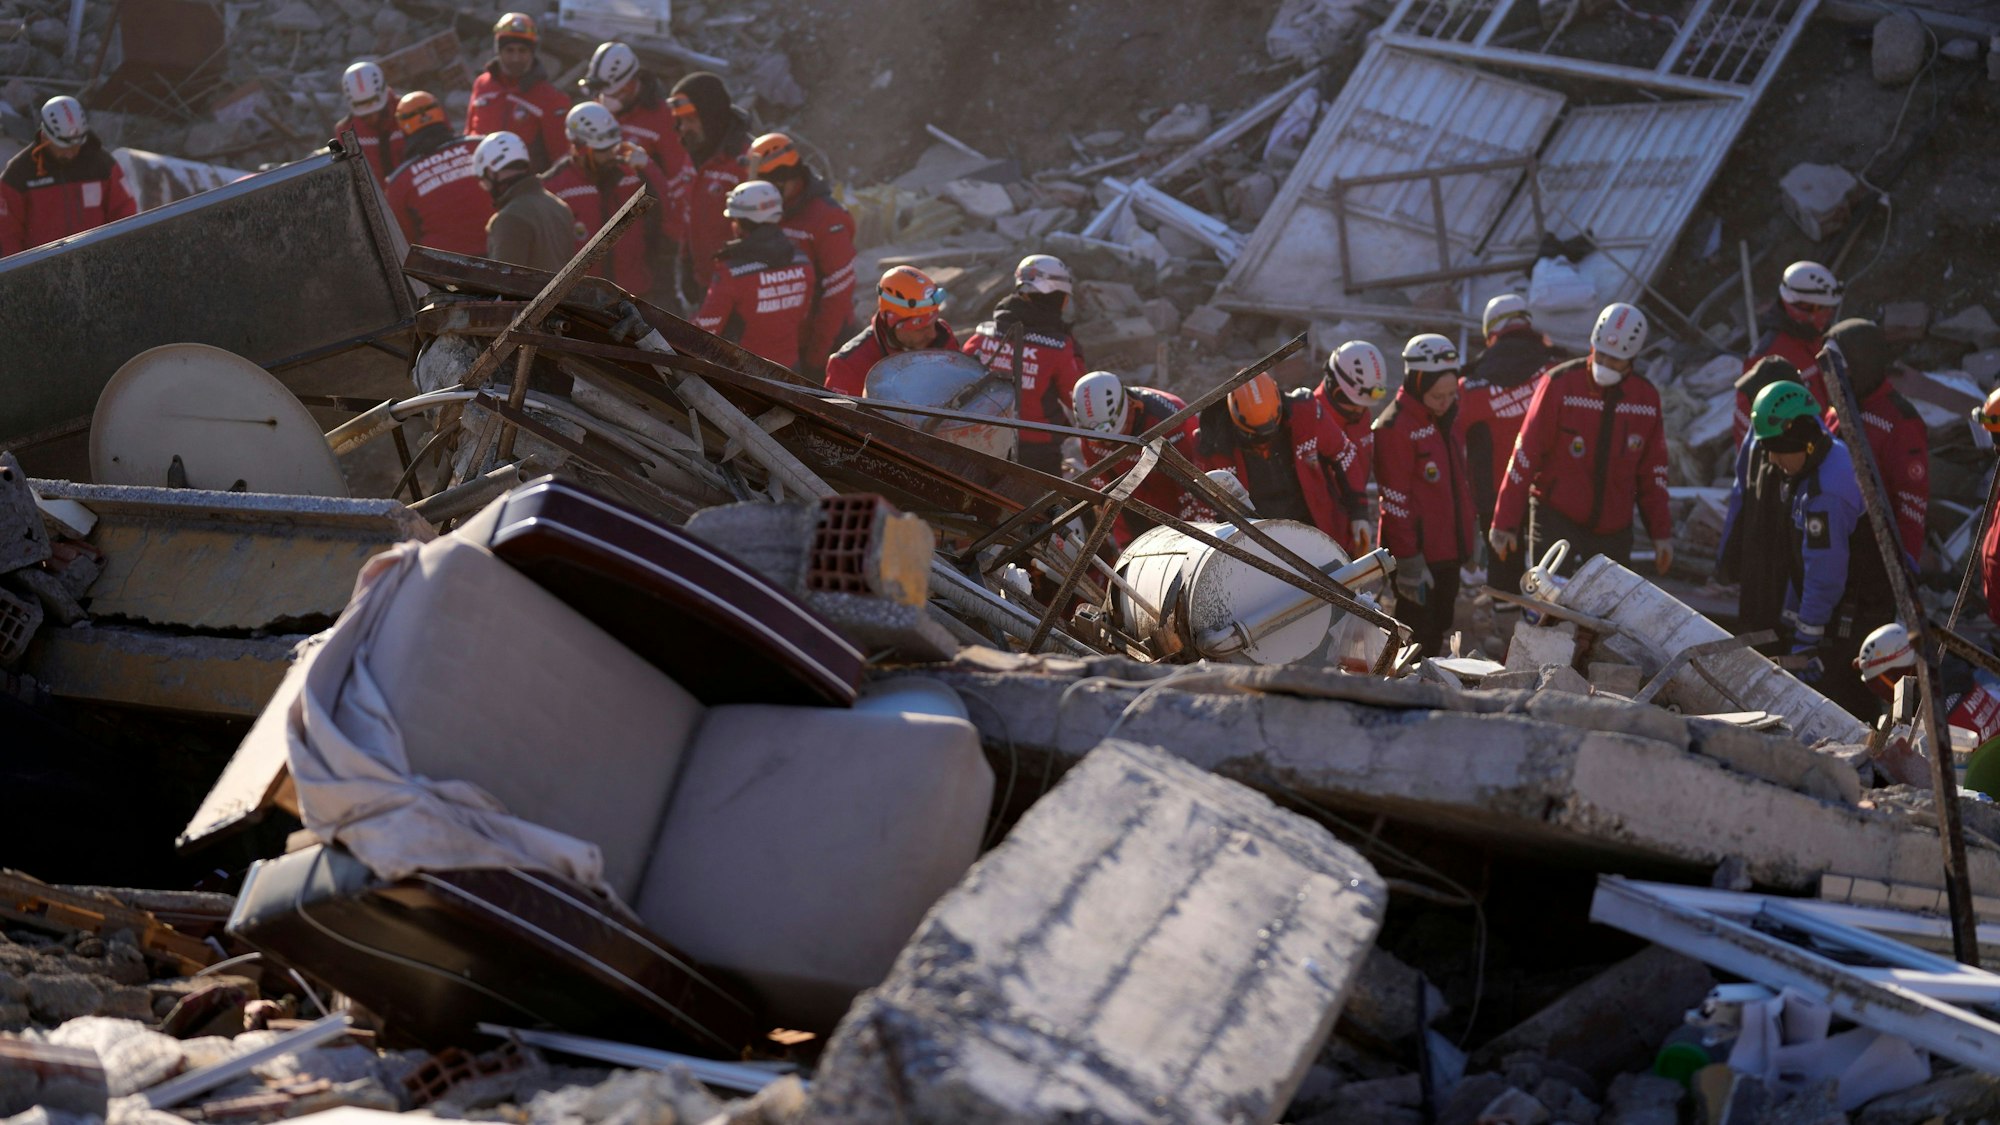 Türkei, Kahramanmaras: Rettungskräfte durchsuchen die Trümmer eines zerstörten Gebäudes nach Überlebenden.